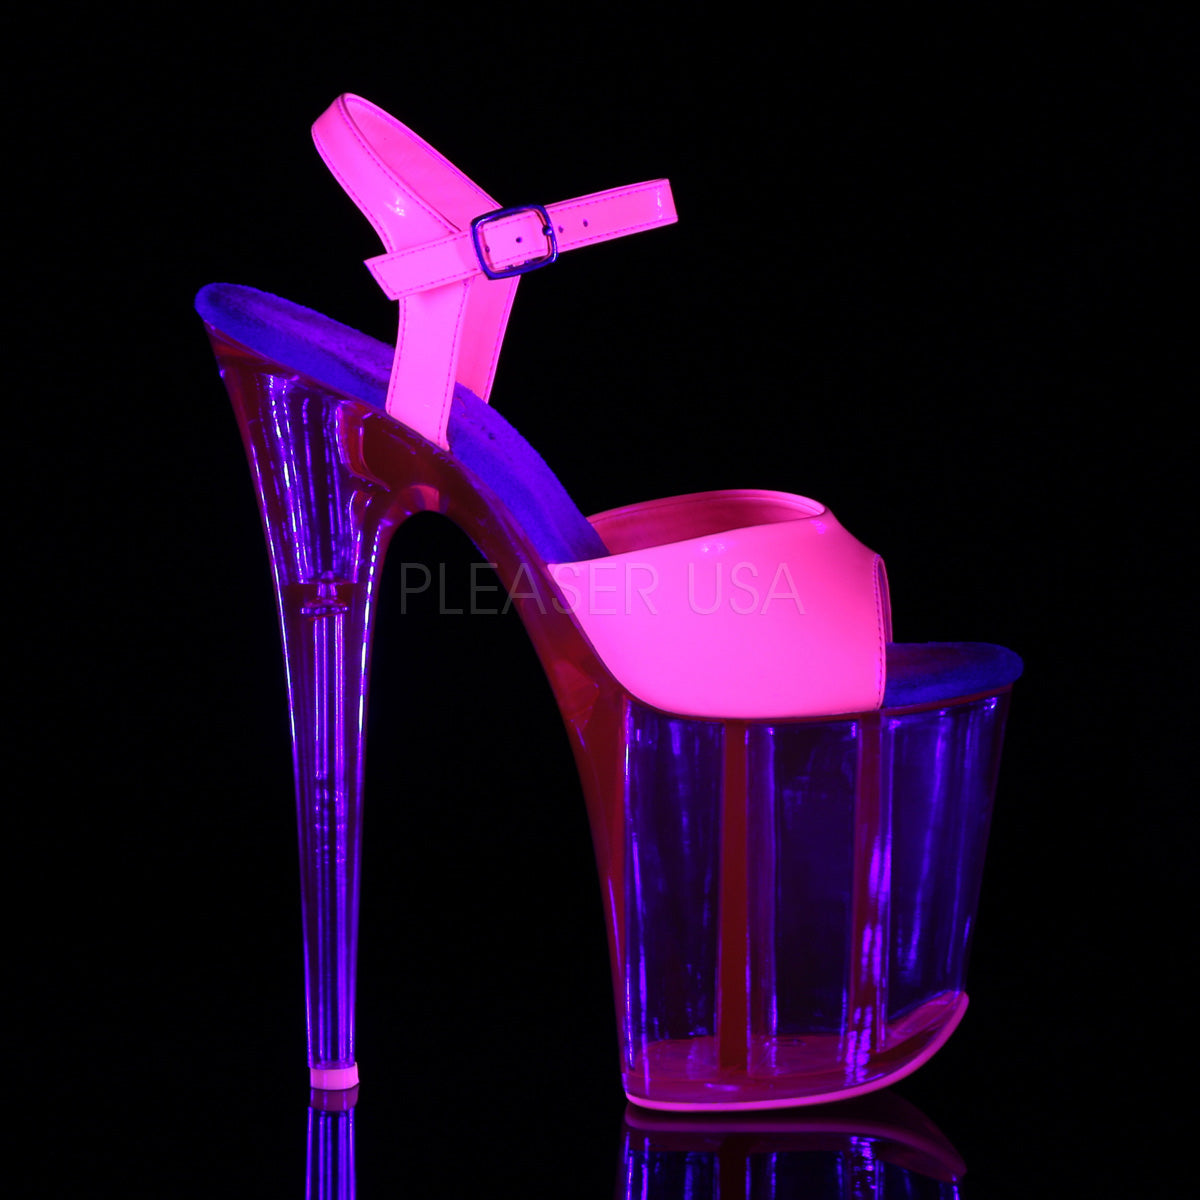 8 Inch Heel FLAMINGO-809UVT Hot Pink